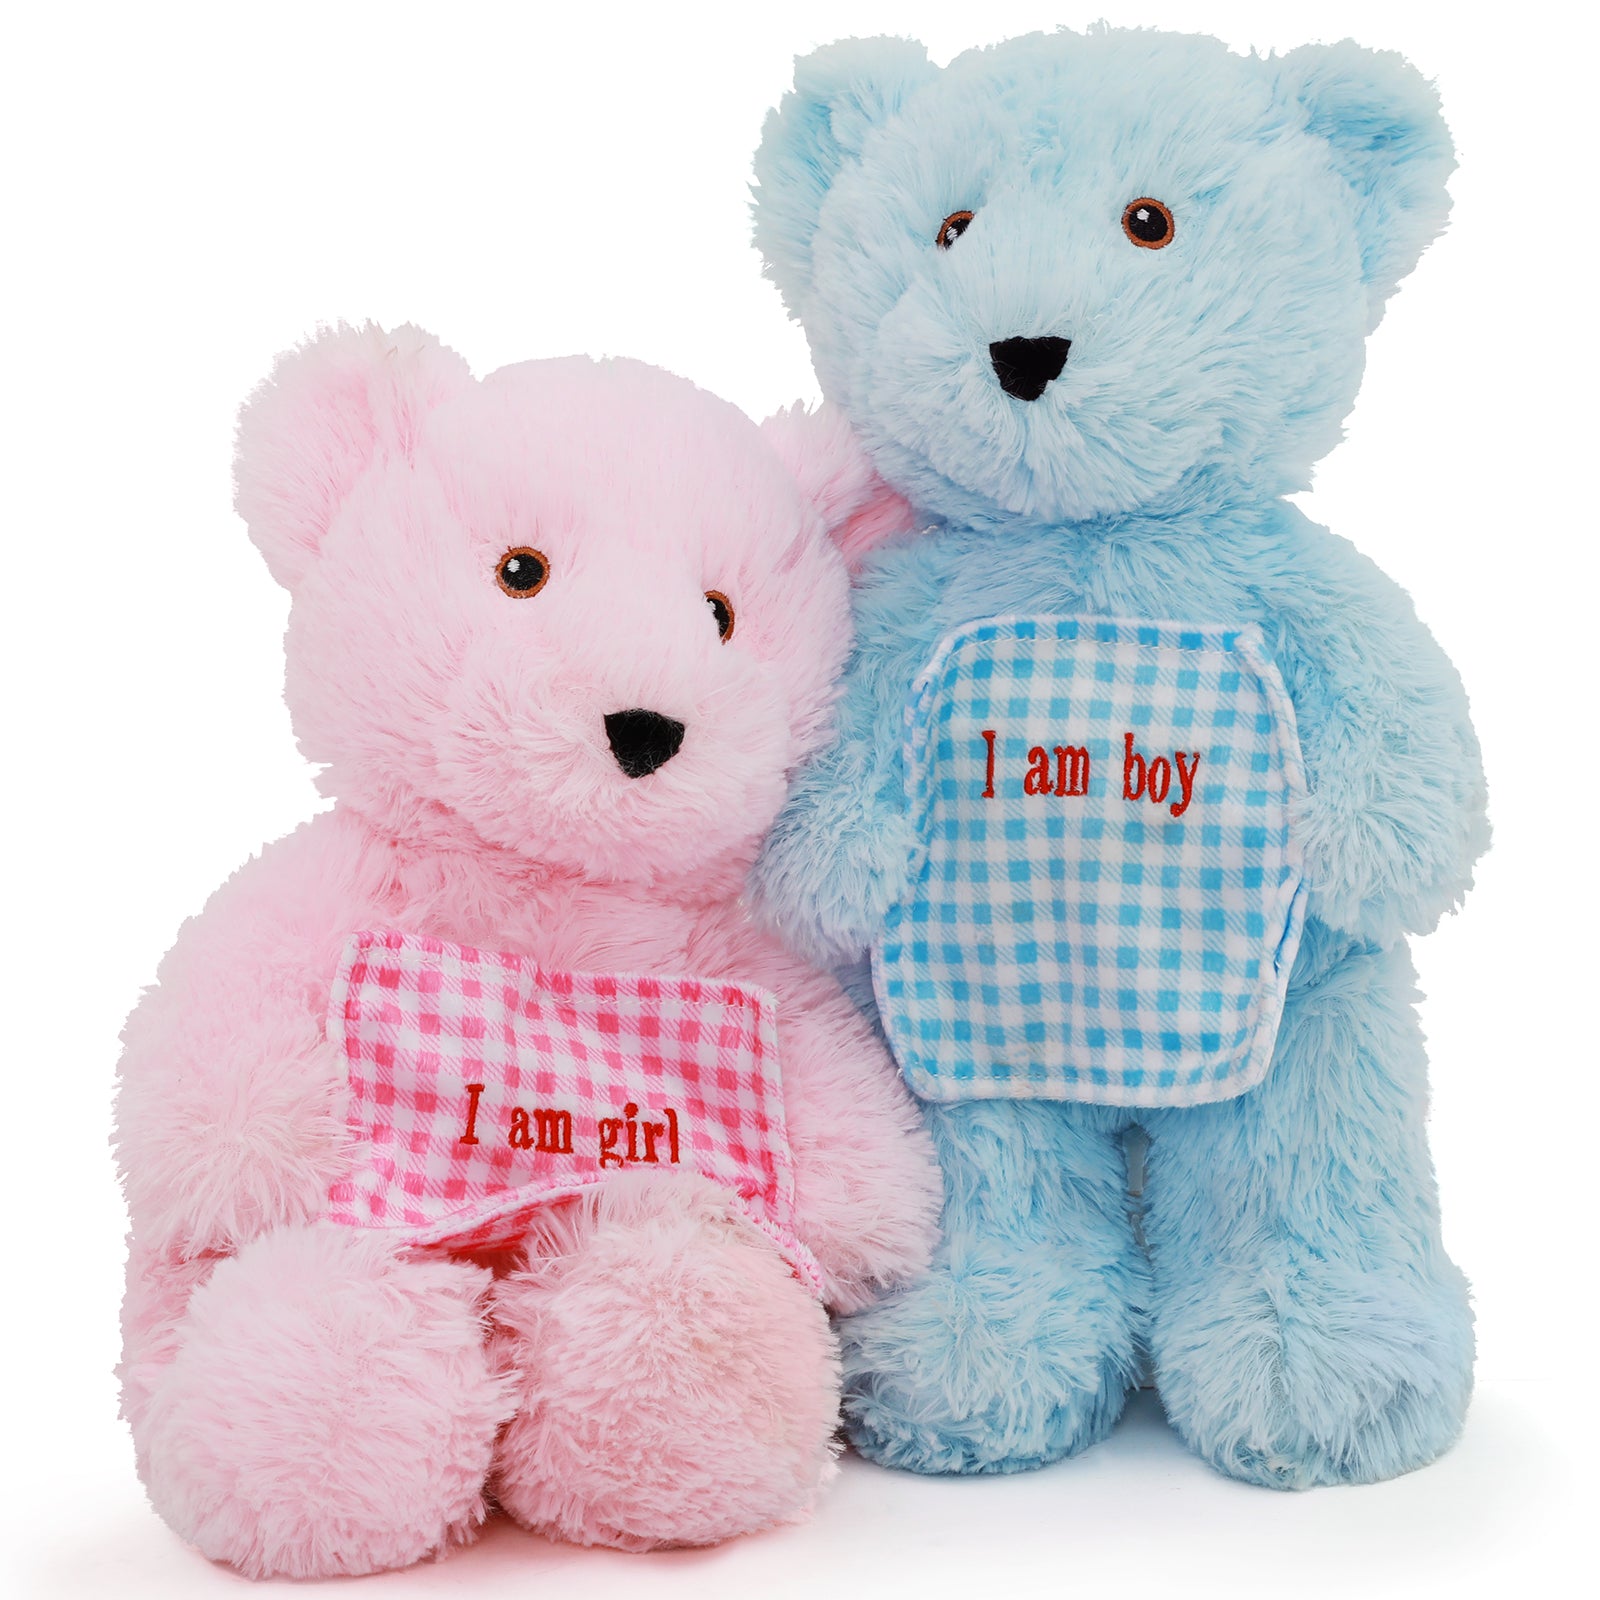 2er-Pack Teddybär-Plüschspielzeug-Set, blau/rosa, 15,7 Zoll